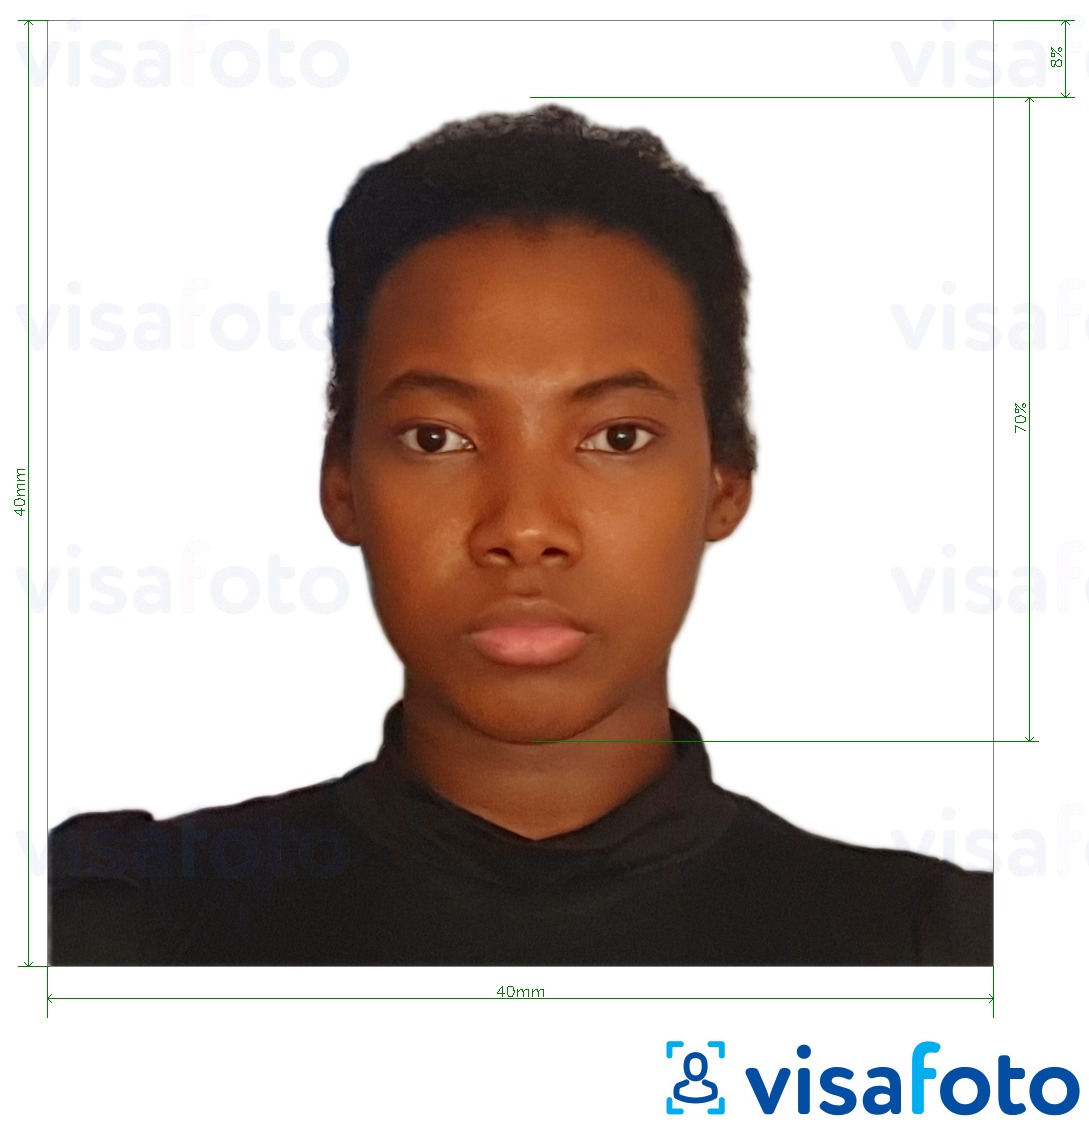 مع مواصفات الحجم الدقيقة بطاقة هوية مدغشقر 40x40 ملم مثال على صورة لـ 